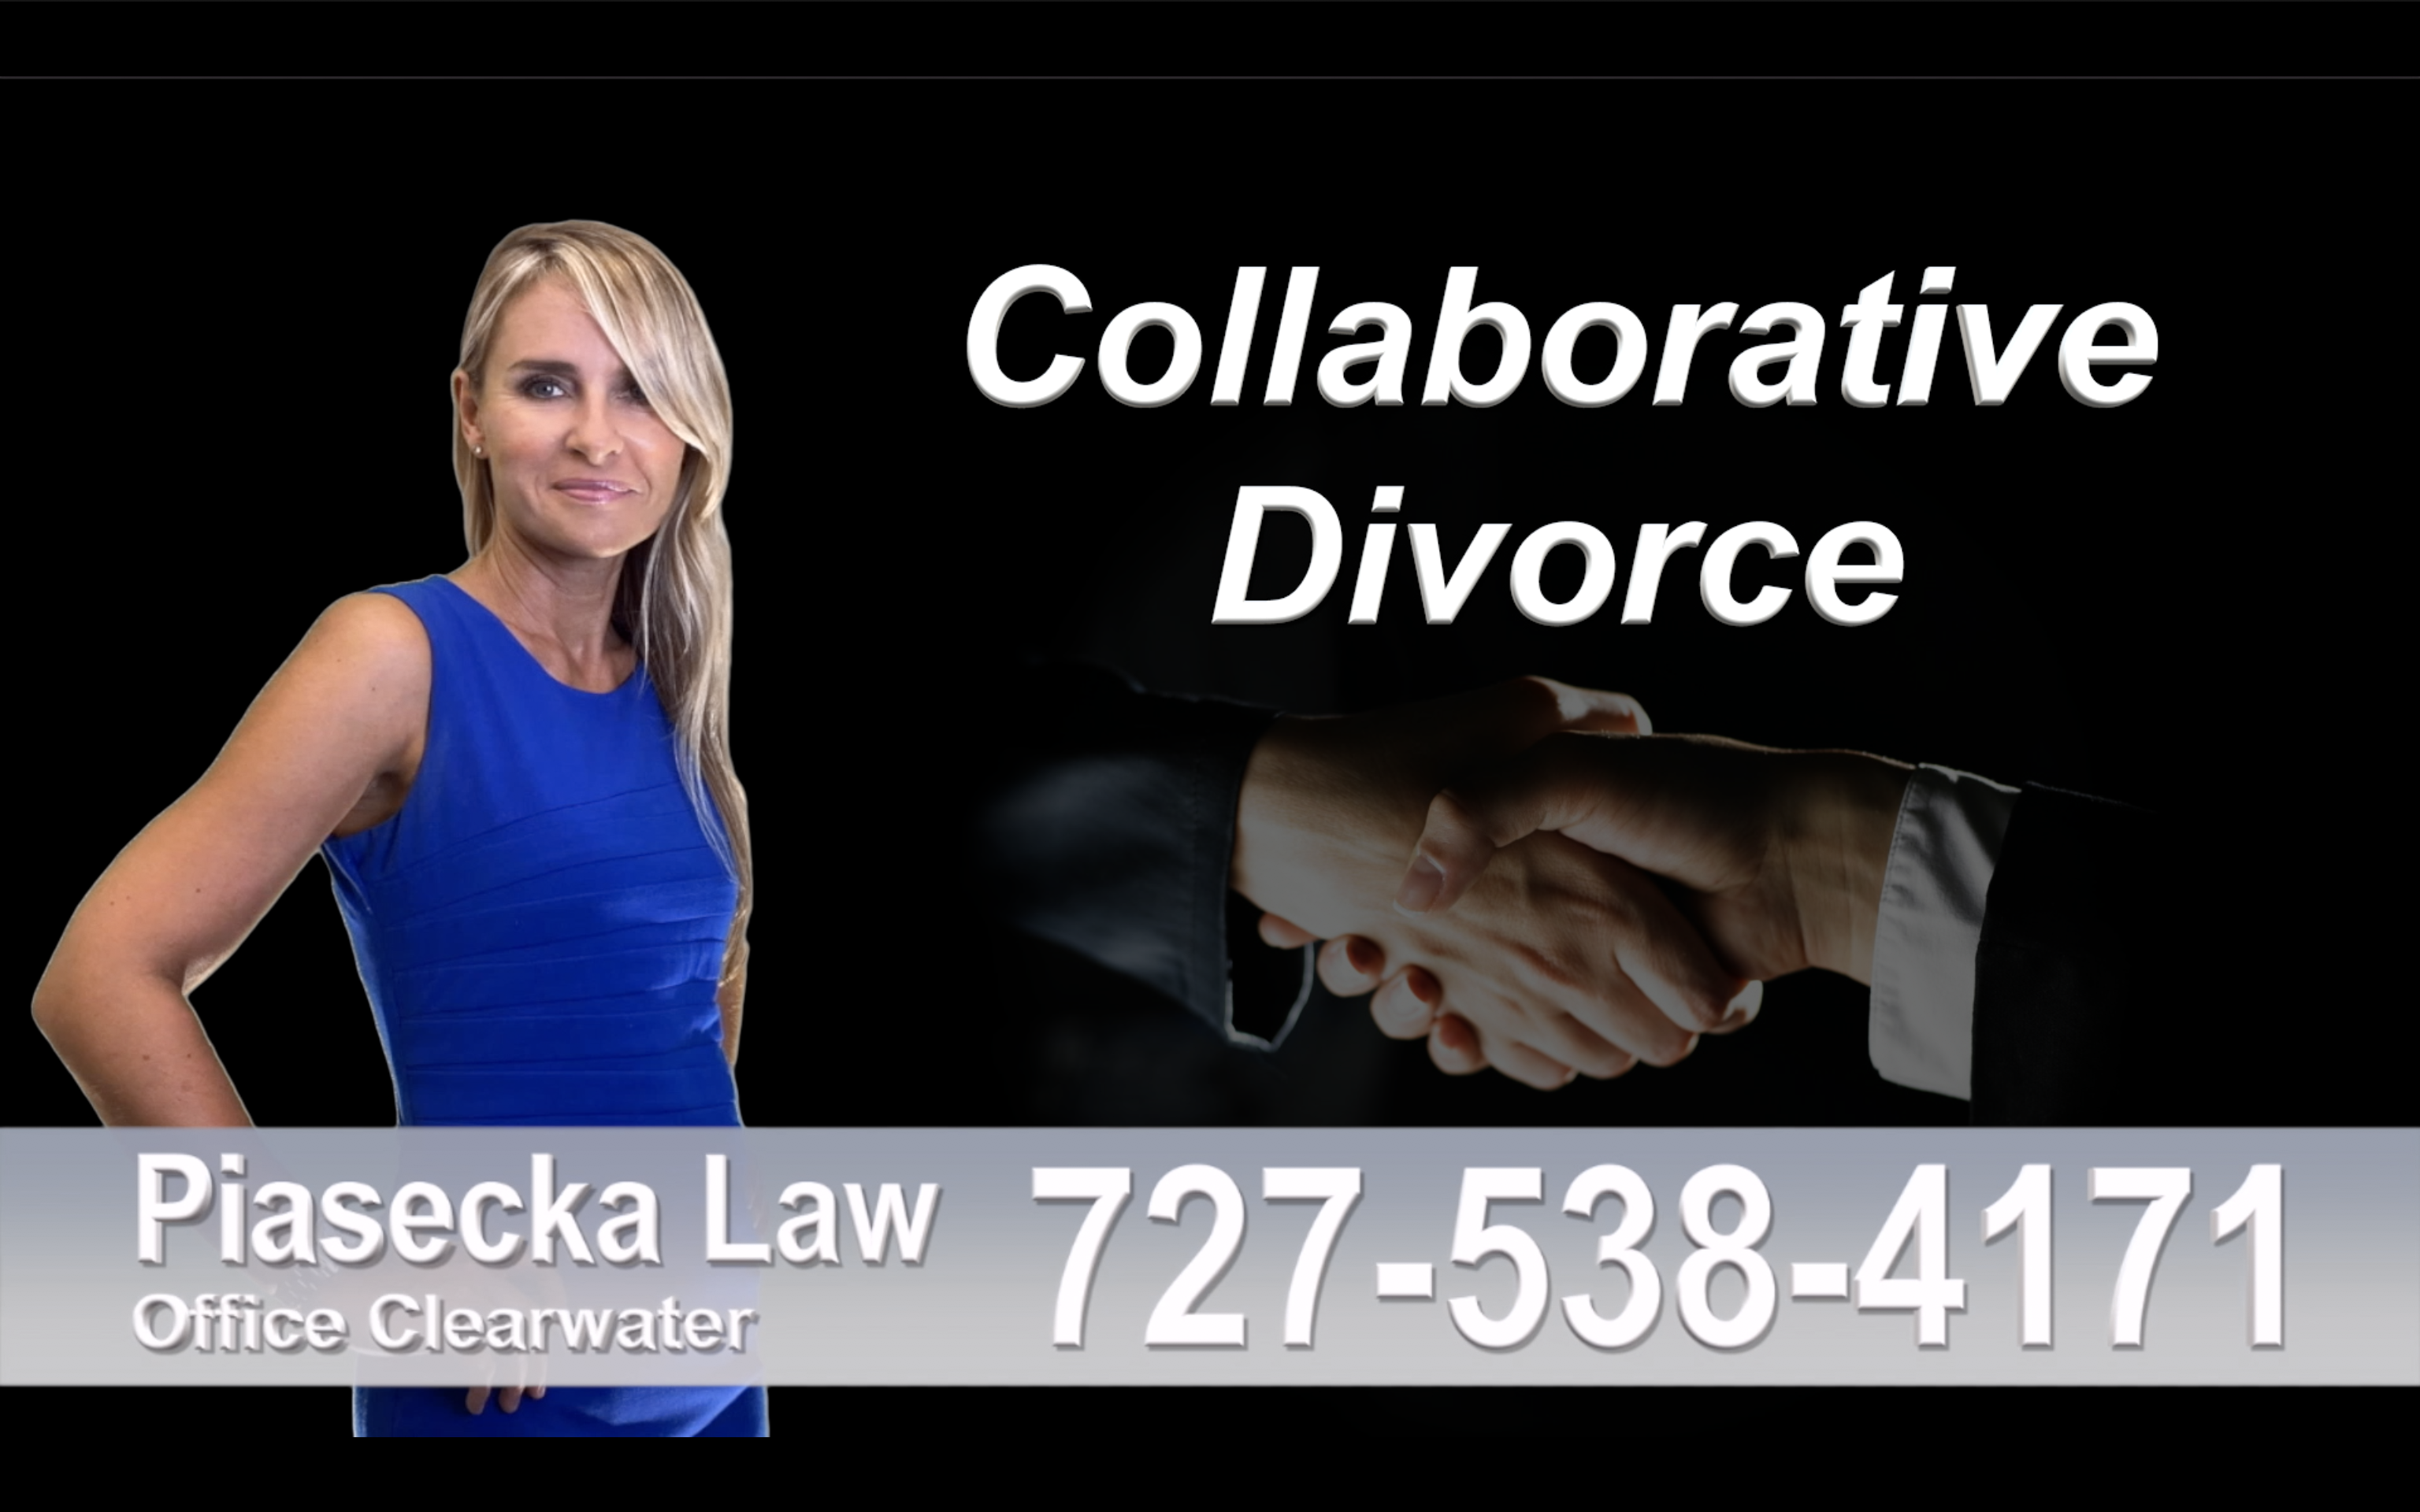 Fort Pierce Collaborative, Divorce, Attorney, Agnieszka, Piasecka, Prawnik, Rozwodowy, Rozwód, Adwokat, rozwodowy, Najlepszy, Best, Collaborative, Divorce, Attorney